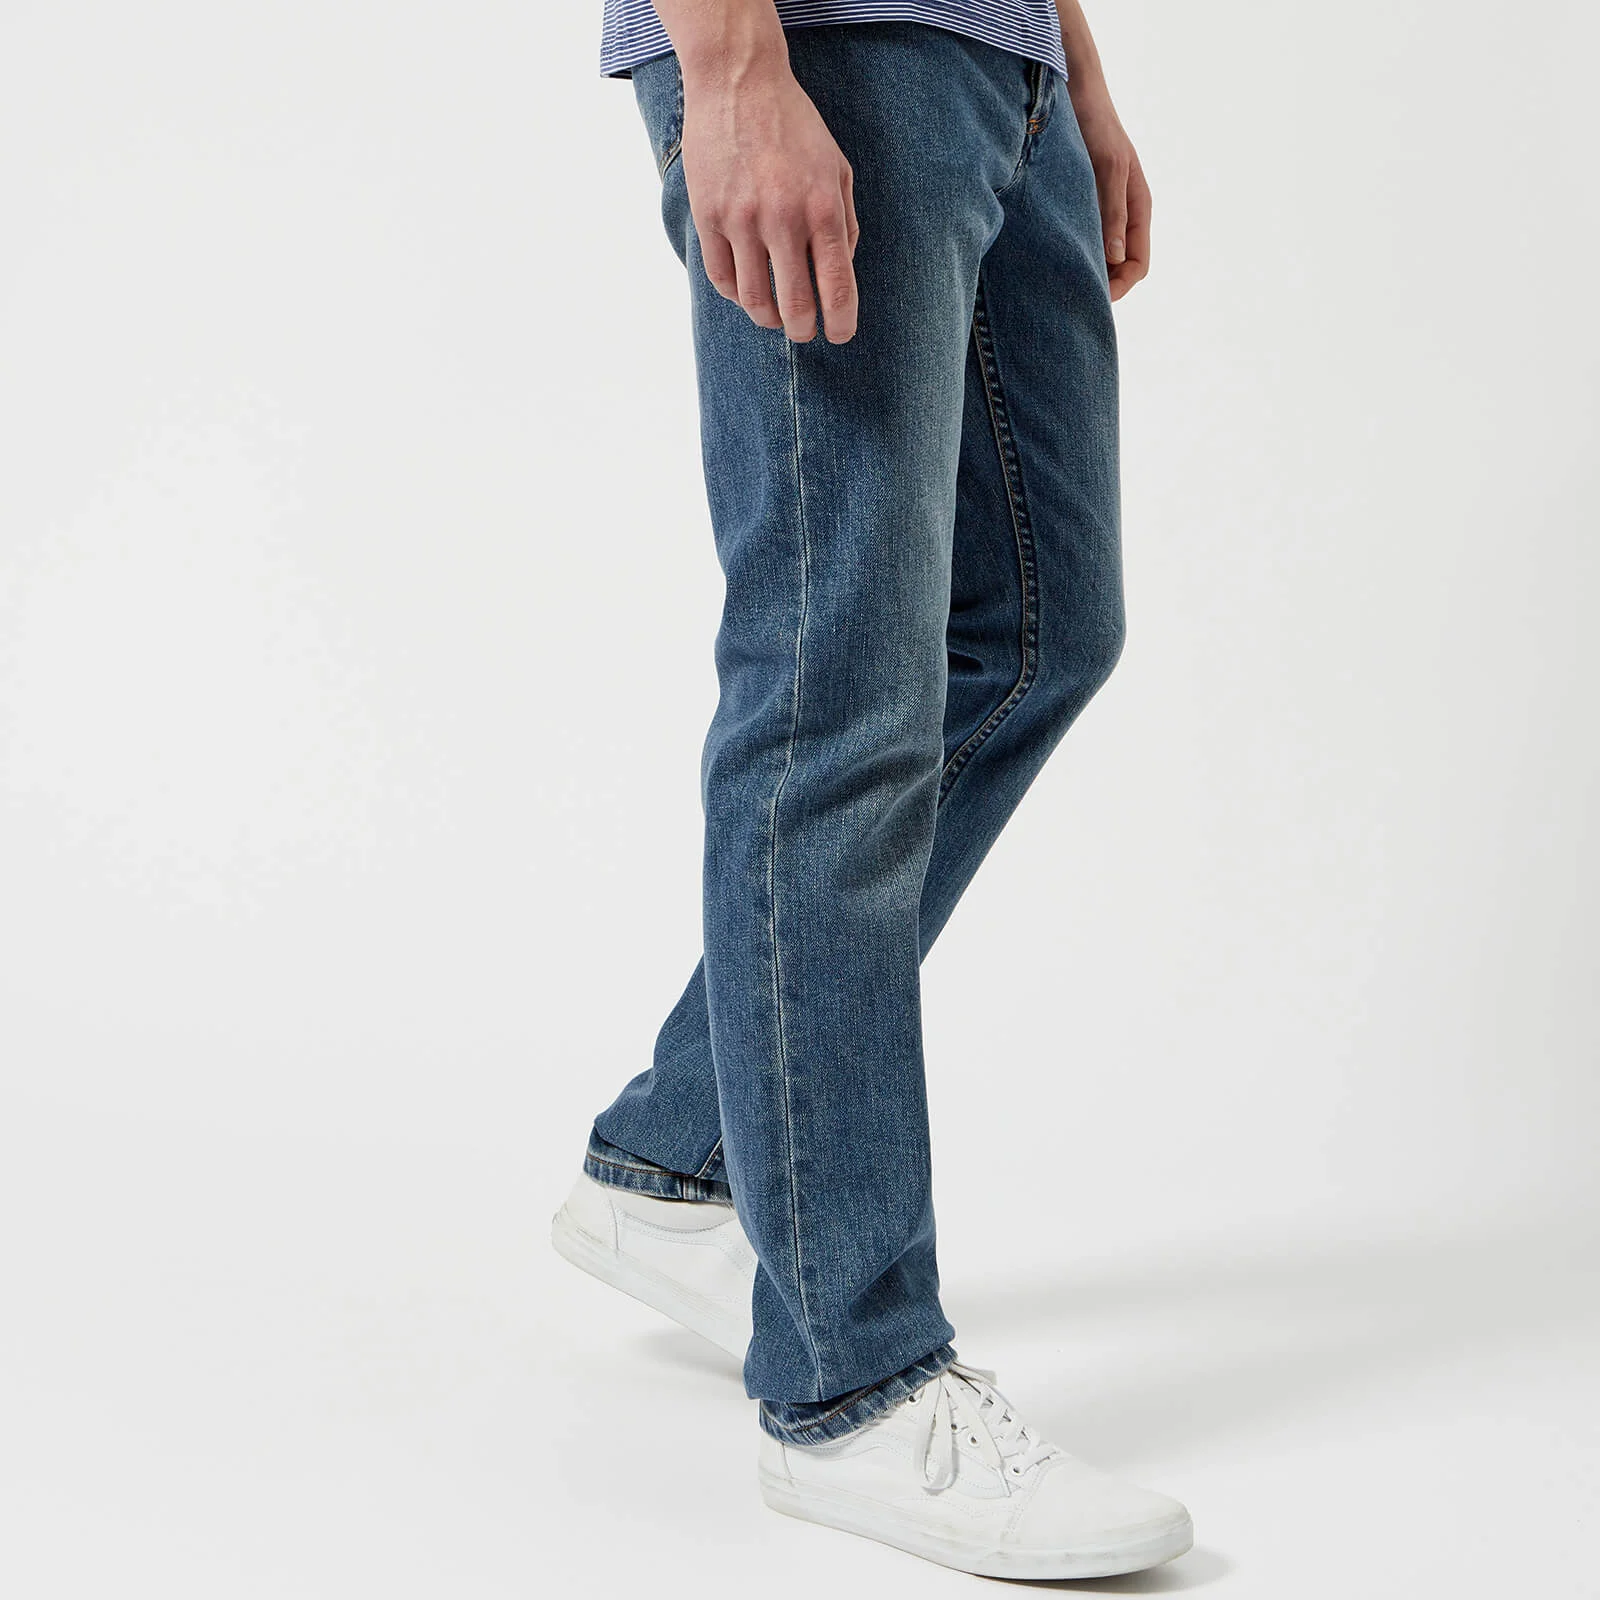 A.P.C. Men's Petit Standard Low Rise Fitted Leg Jeans - Indigo Delave Image 1